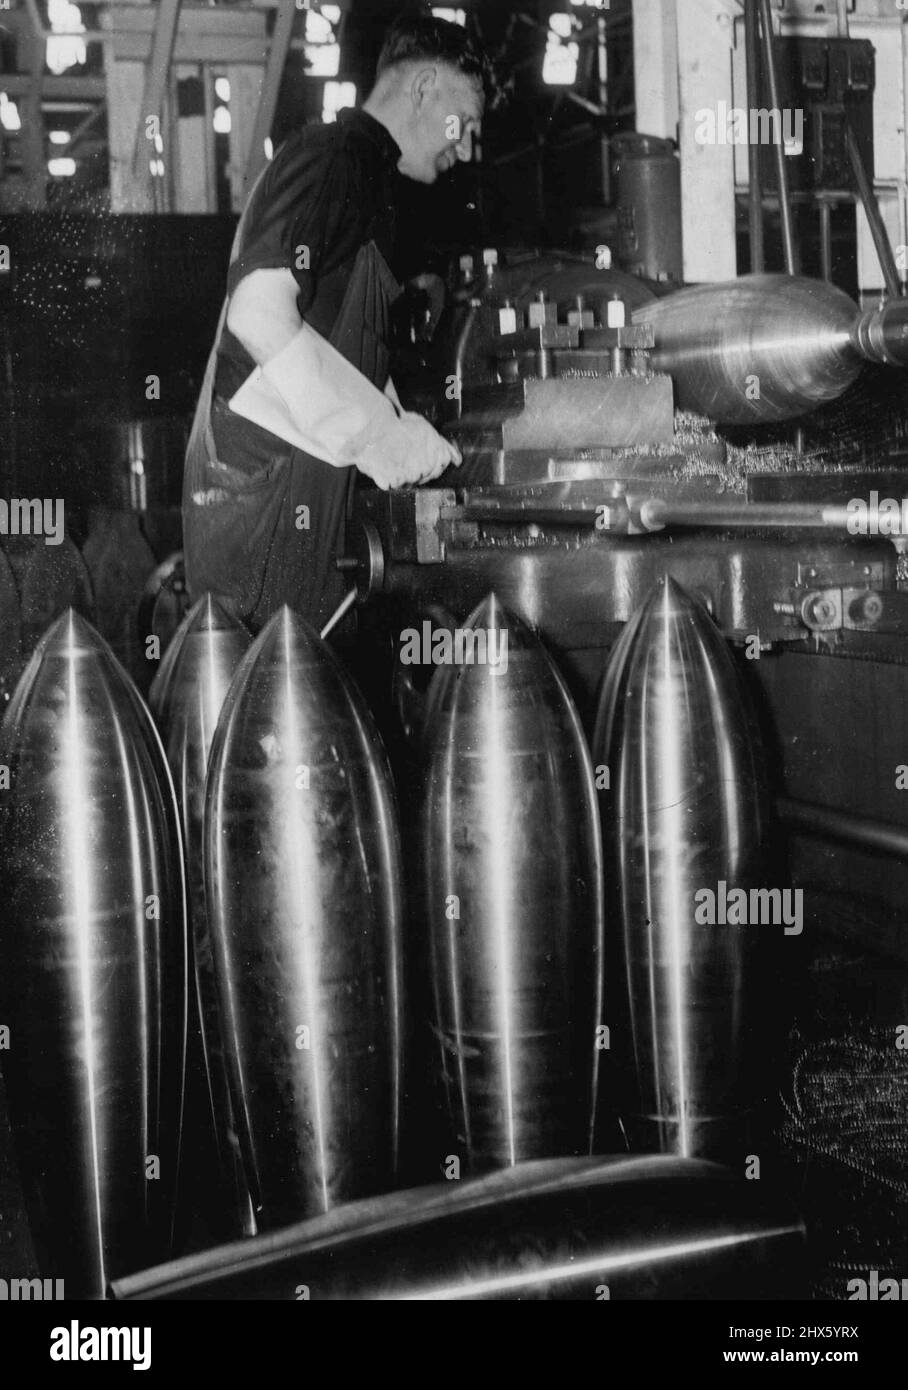 Panzerbrechende Bomben werden jetzt in einer Waffenfabrik der Regierung irgendwo in Australien in voller Produktion produziert. Hier ist ein Bild, das in einem Teil der Fabrik aufgenommen wurde, wo die 250-Pfünder auf einer Drehbank fertig gestellt werden. 22. Februar 1943.;Panzerdurchbohrende Bomben sind jetzt in einer Regierungsfabrikate irgendwo in Australien in voller Produktion. Hier ist ein Bild, das in einem Teil der Fabrik aufgenommen wurde, wo die 250-Pfünder auf einer Drehbank fertig gestellt werden. Stockfoto